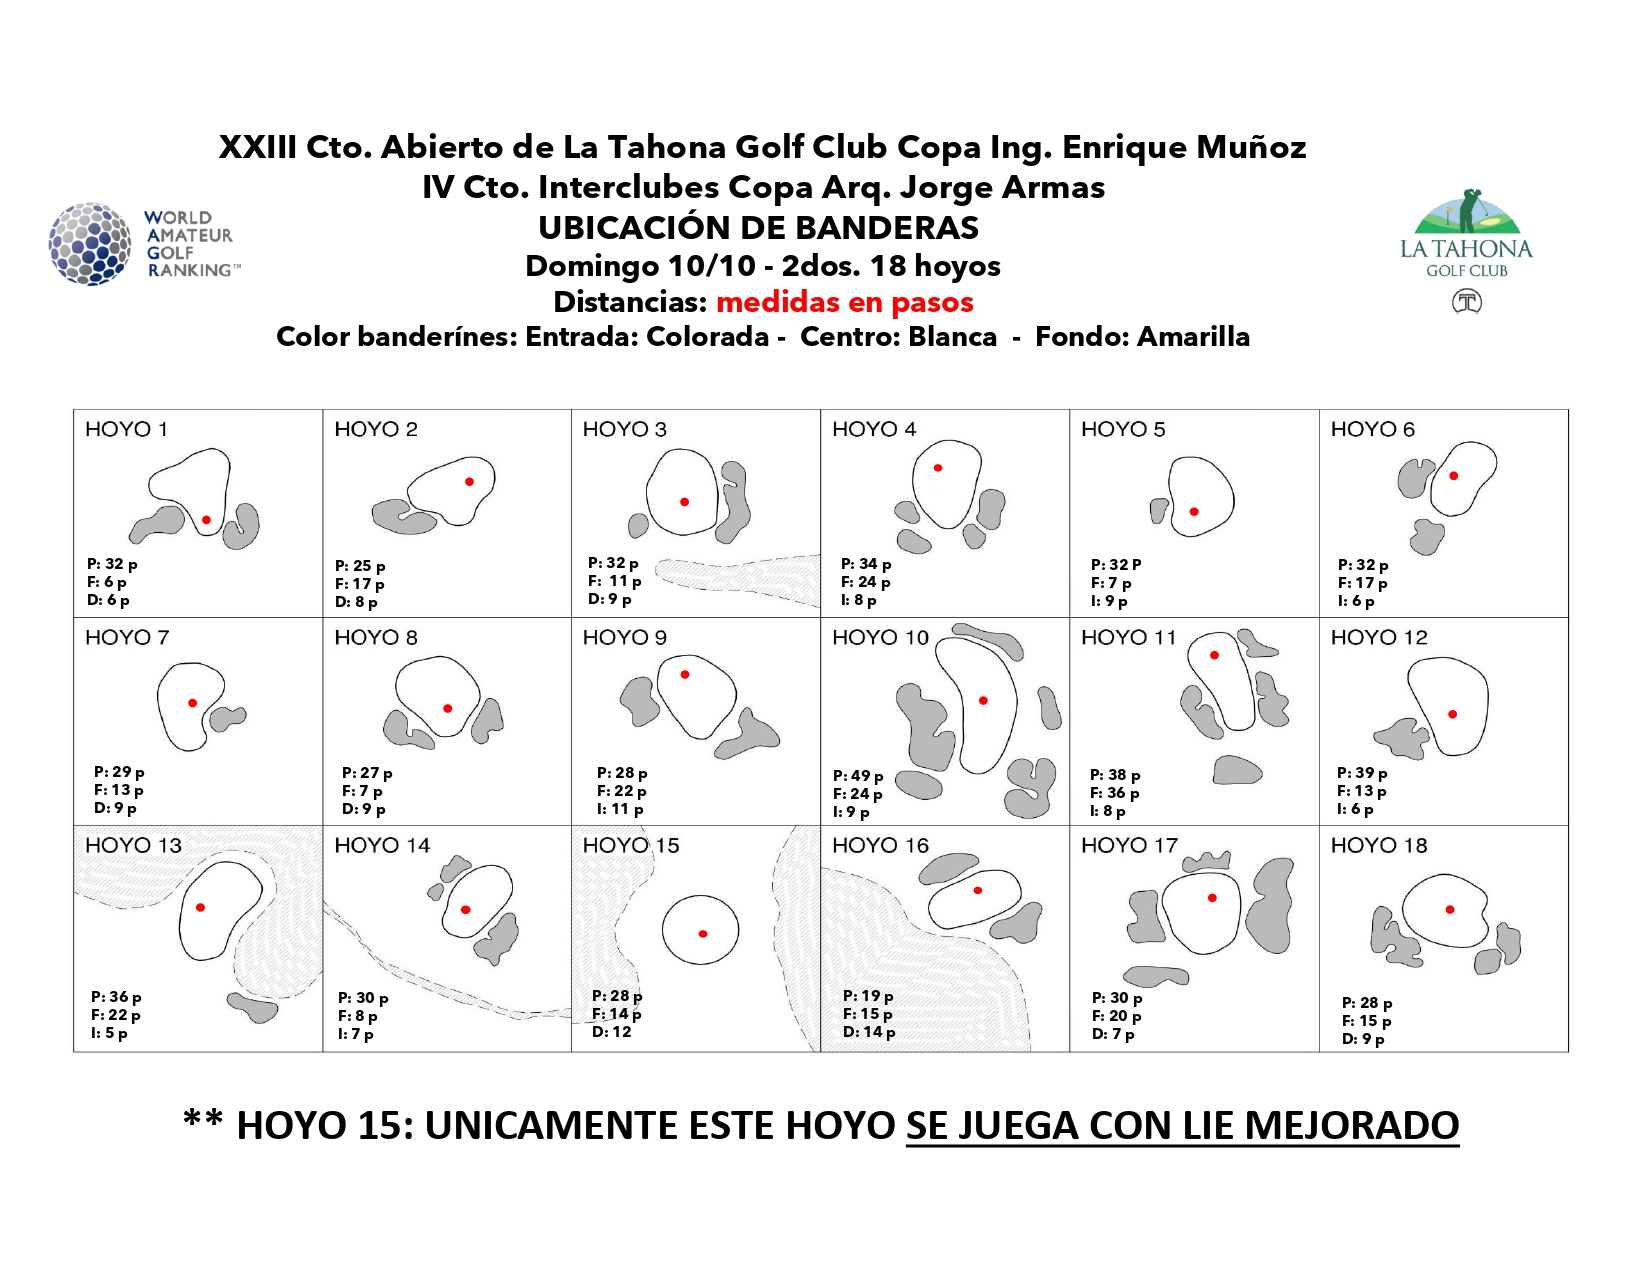 XXIII Cto. Abierto de La Tahona Golf Club Copa Ing. Enrique Muoz - Posicin de banderas para el 2do